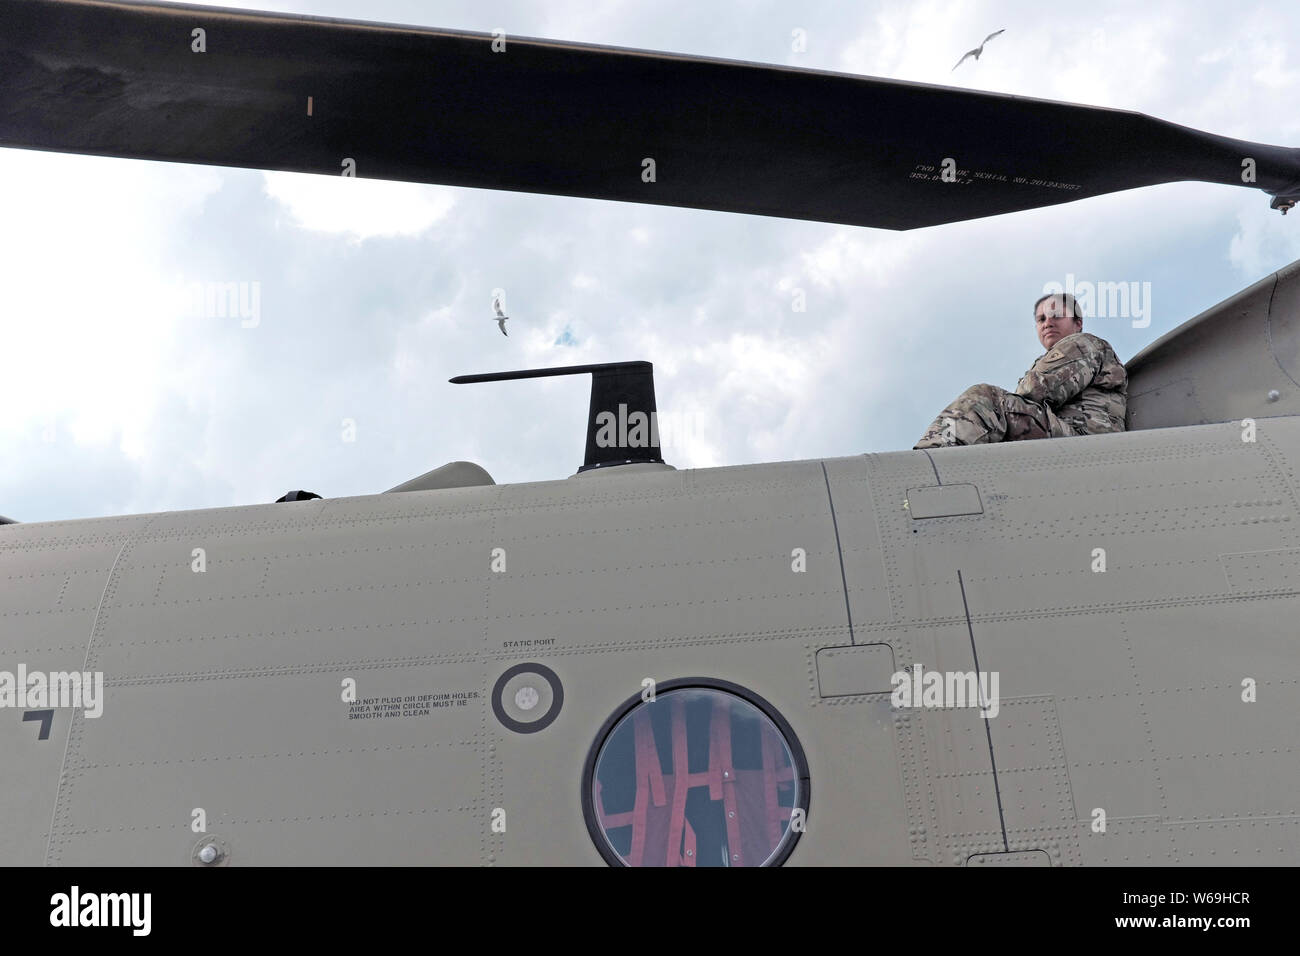 La femmina dell'Esercito degli Stati Uniti siede in cima ad un aereo dell'Esercito degli Stati Uniti al Cleveland National Air Show a Cleveland, Ohio, Stati Uniti. Foto Stock